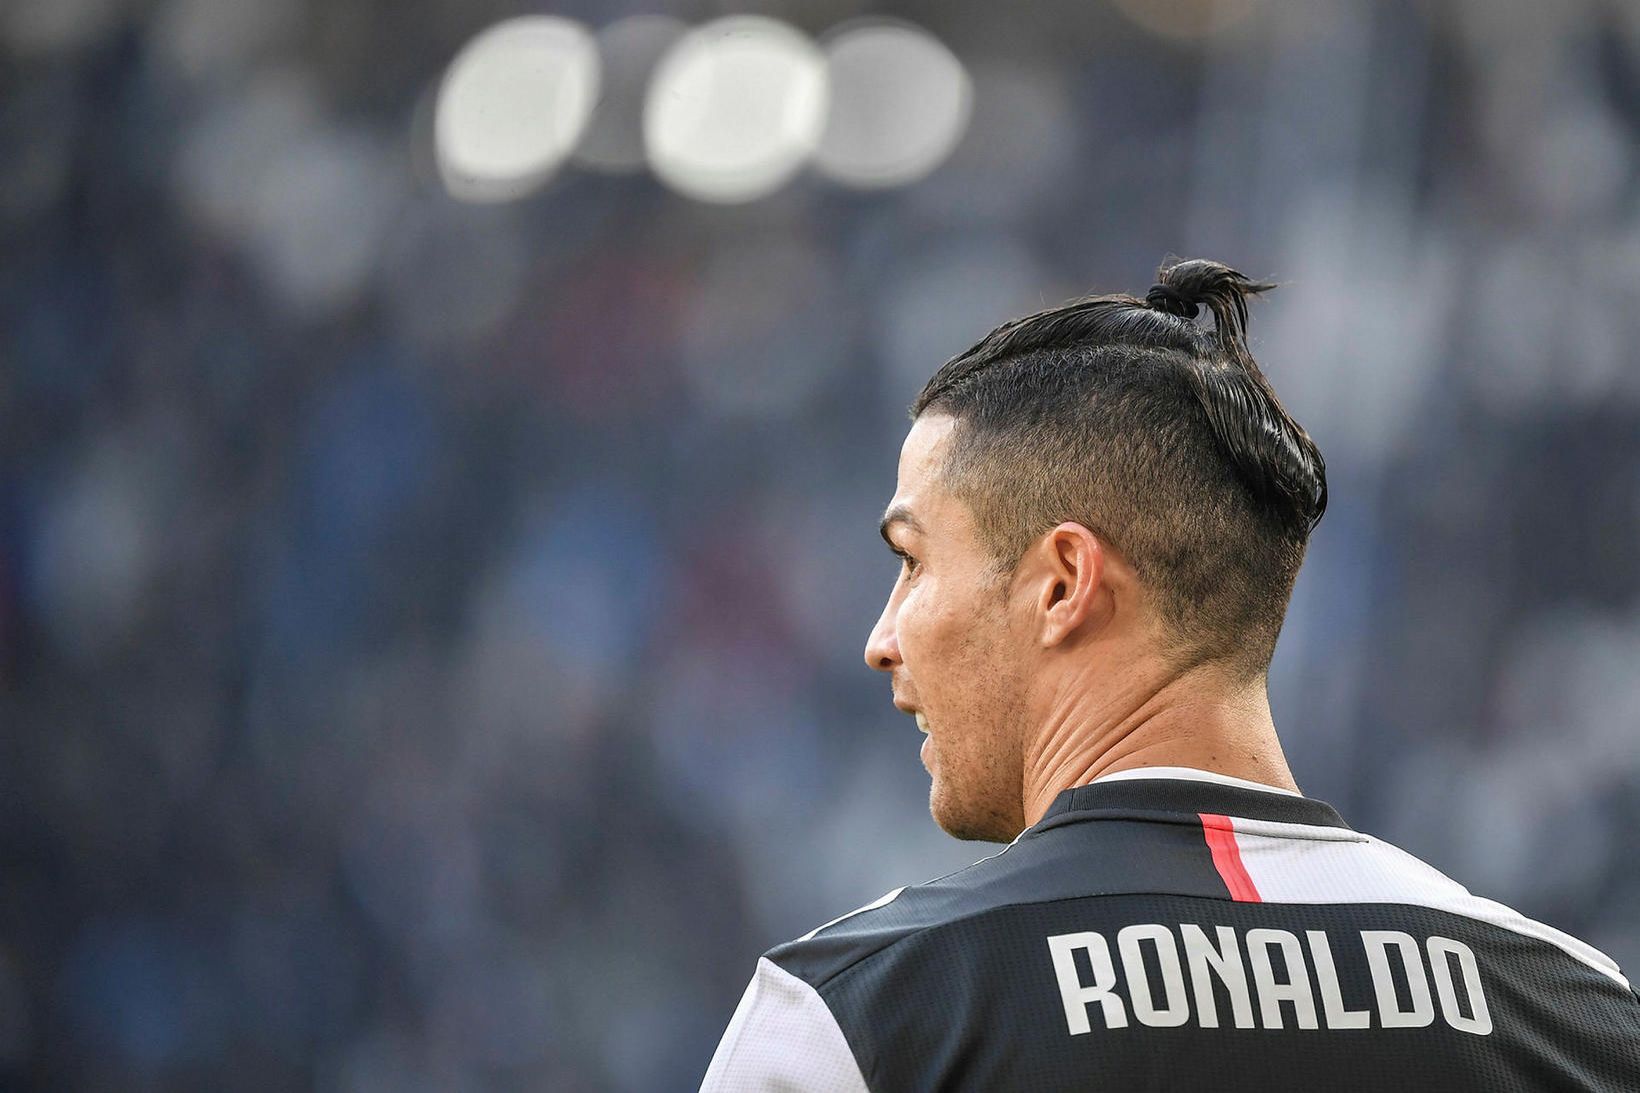 Ronaldo spriklaði ekkert á vellinum í Seoul í júlí í …